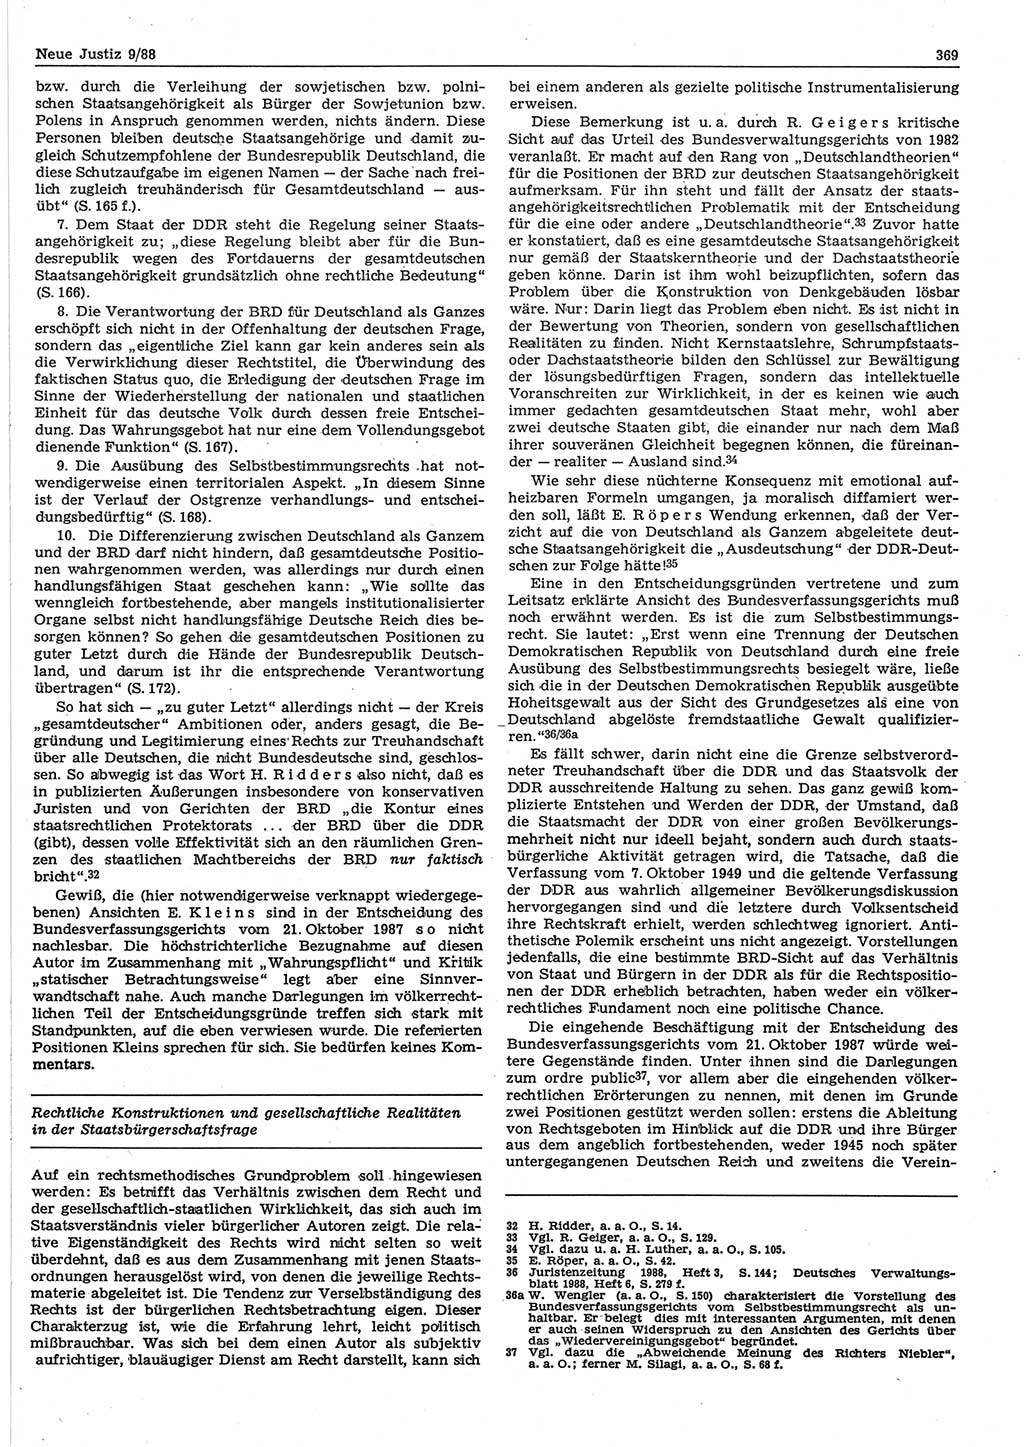 Neue Justiz (NJ), Zeitschrift für sozialistisches Recht und Gesetzlichkeit [Deutsche Demokratische Republik (DDR)], 42. Jahrgang 1988, Seite 369 (NJ DDR 1988, S. 369)